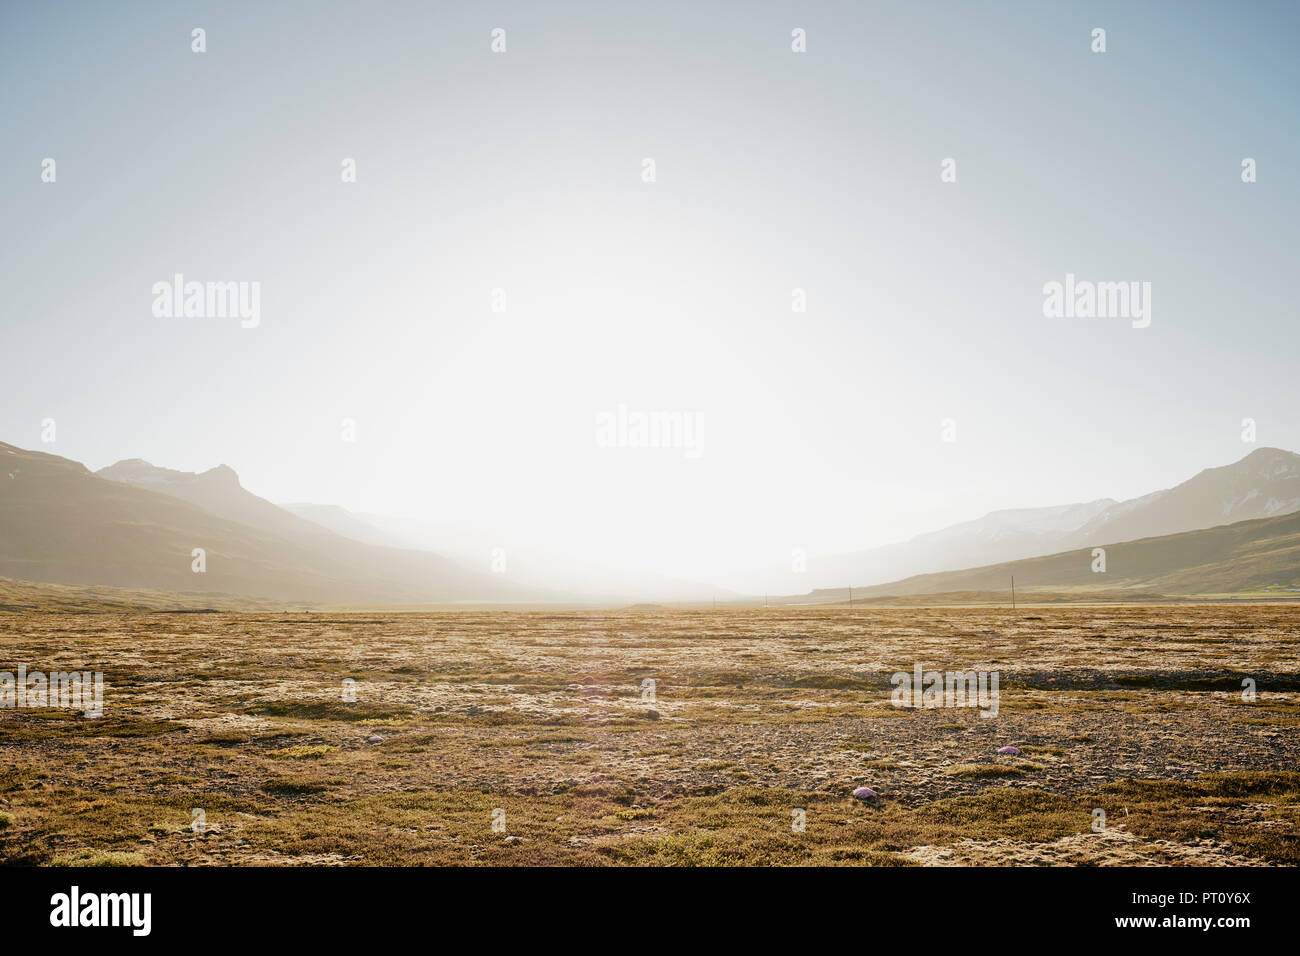 Un paysage d'Islande vide avec des montagnes et des landes rétro-éclairées par la lumière du soleil dans un ciel clair avec l'espace de copie - Minimalisme islandais Banque D'Images